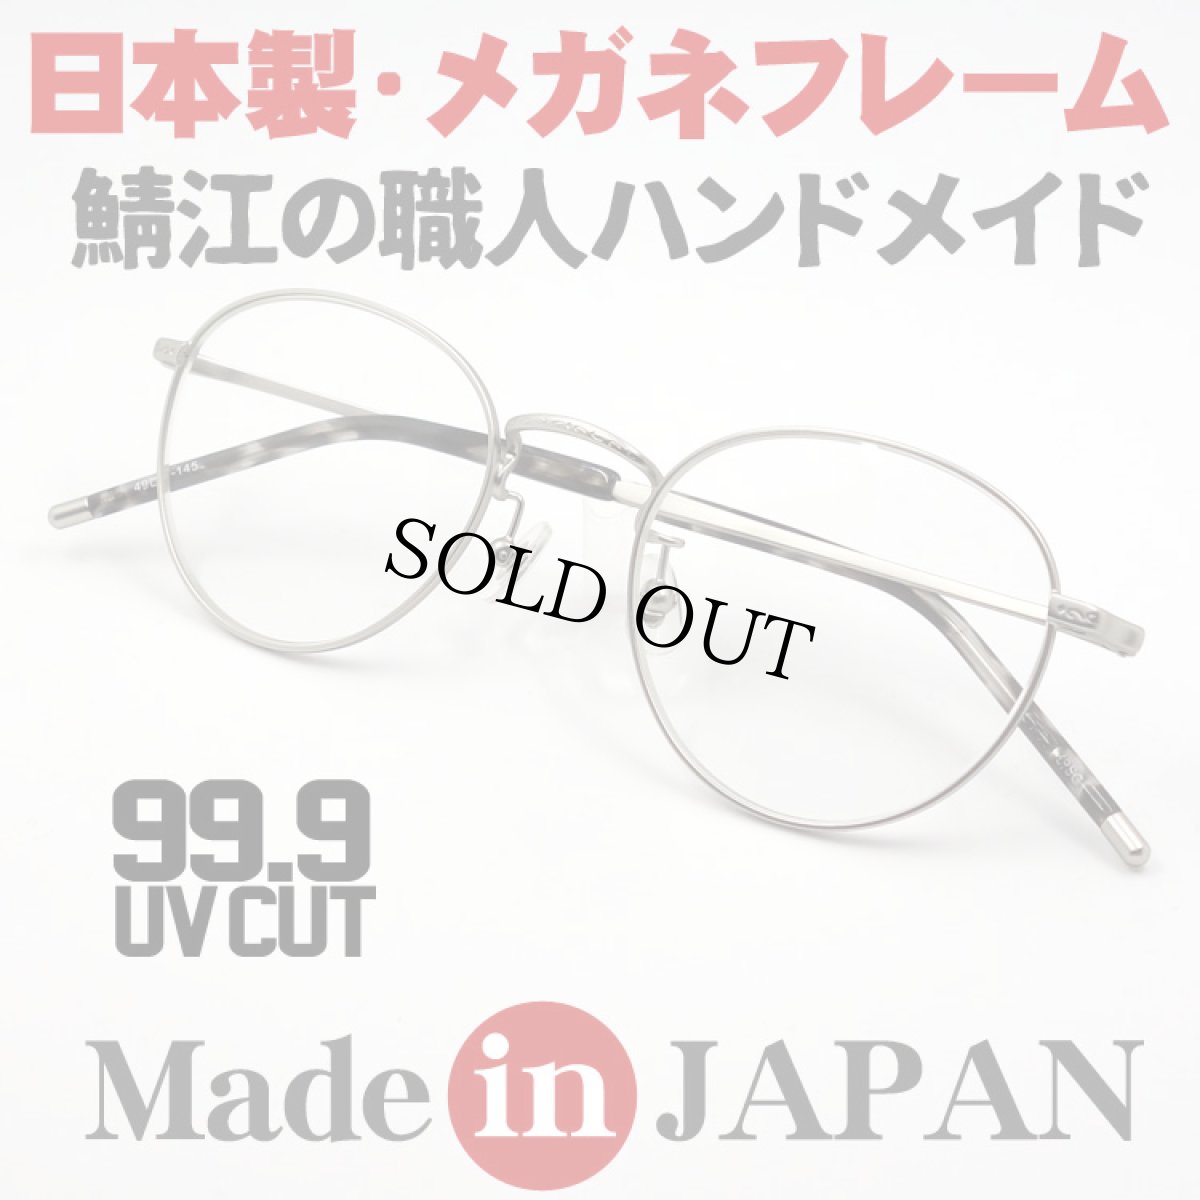 画像1: 日本製 職人ハンドメイド ラウンド系 ボストン 眼鏡 マットシルバー (1)